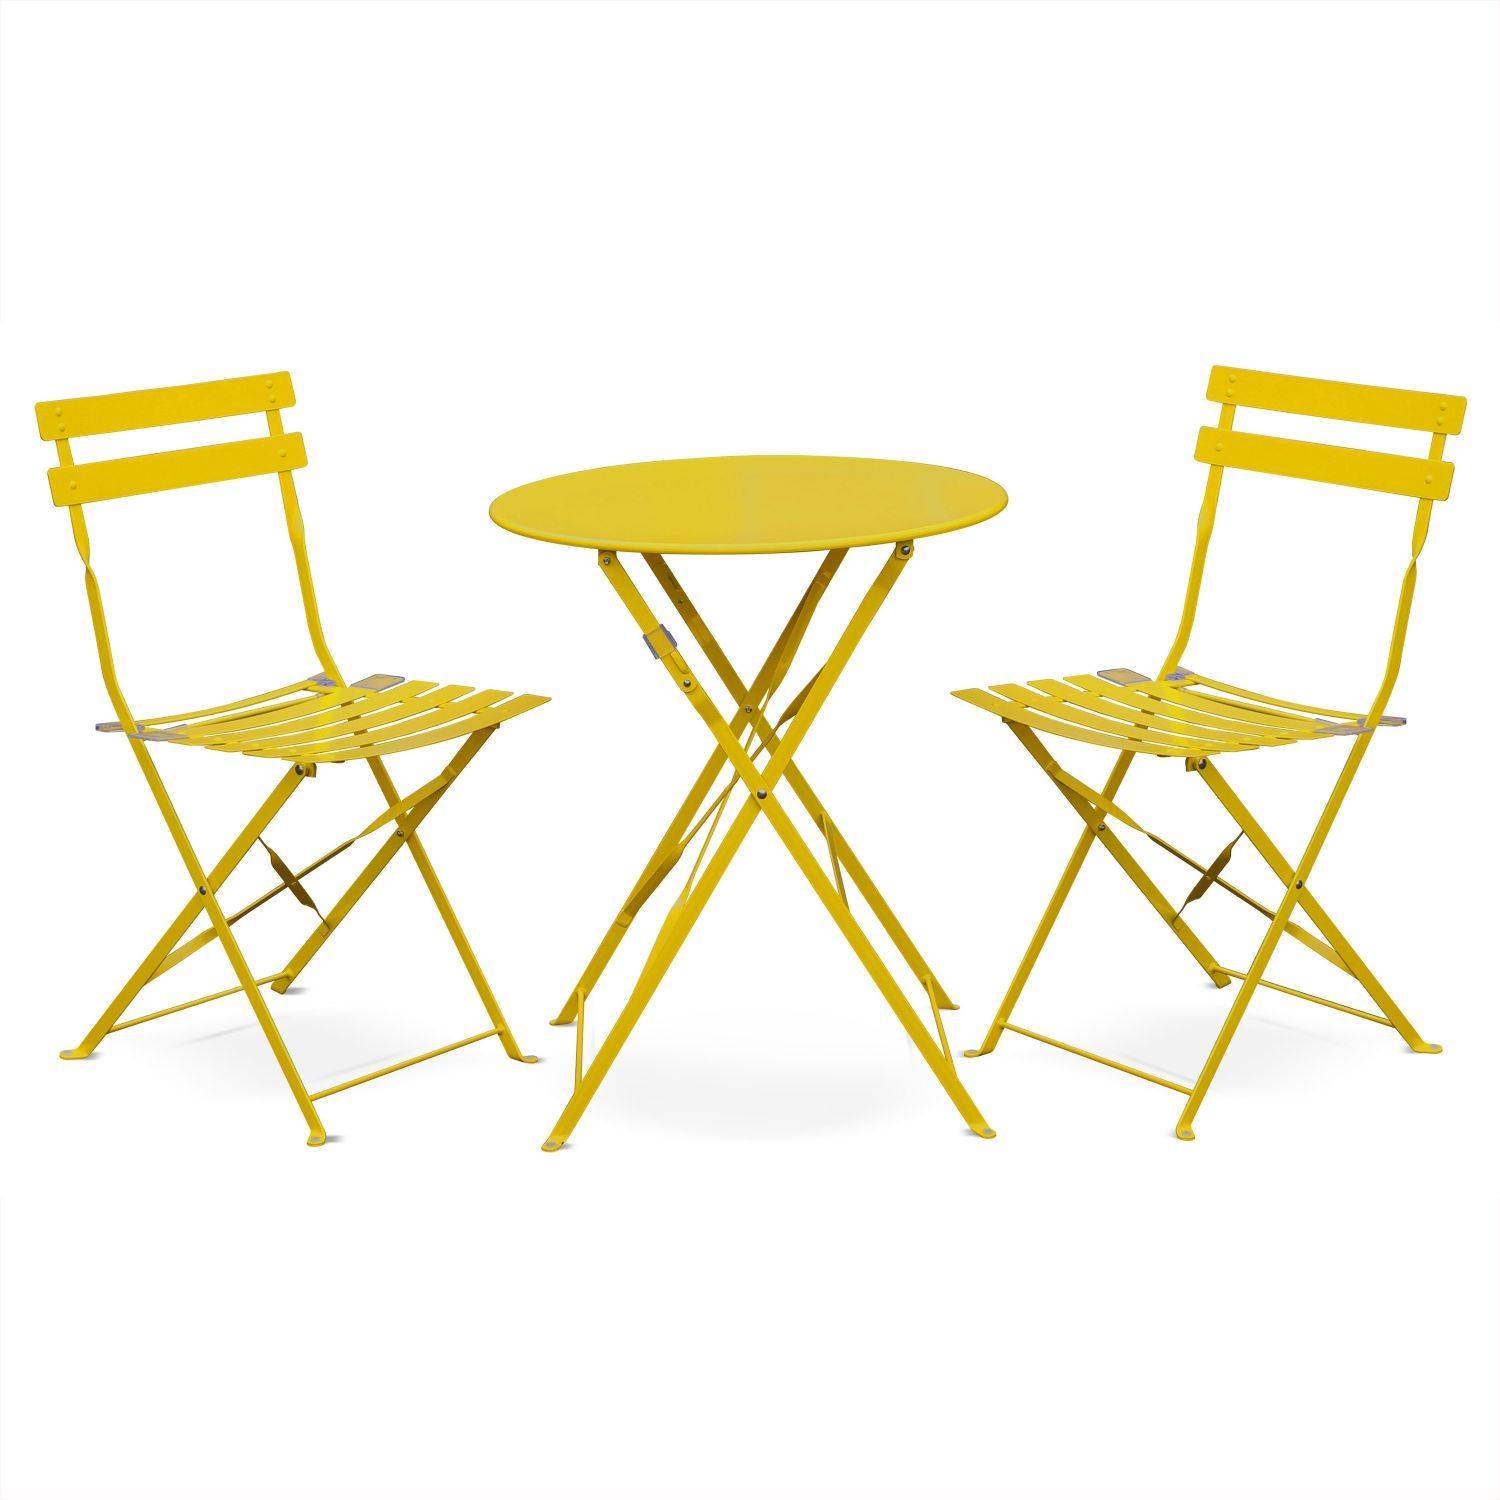 Klappbare Bistro-Gartengarnitur - Emilia rund gelb - Ø60cm Tisch mit zwei Klappstühlen aus pulverbeschichtetem Stahl Photo2